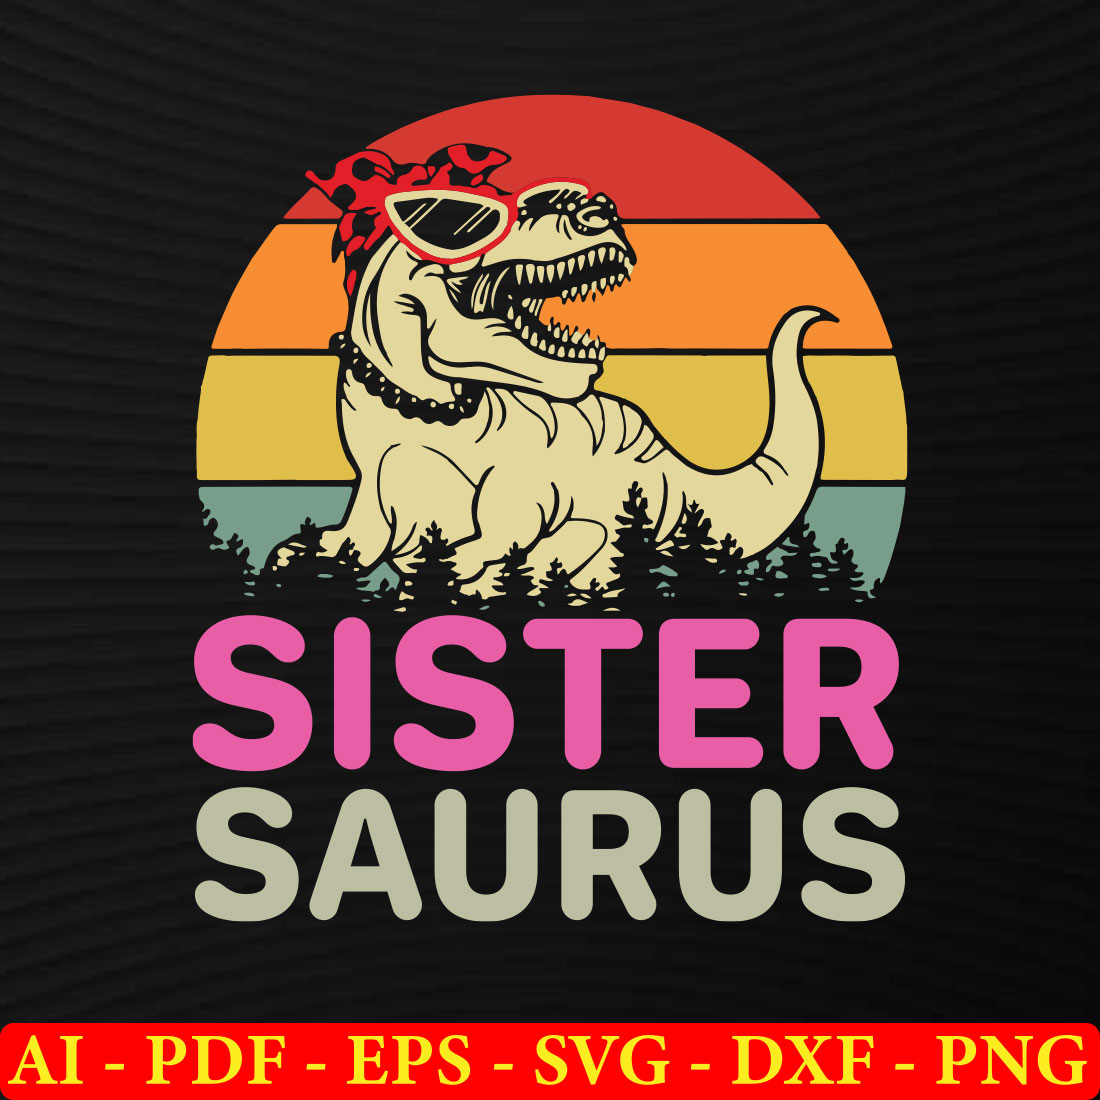 6 Dinosaur T-shirt SVG Bundle Vol-04 preview image.